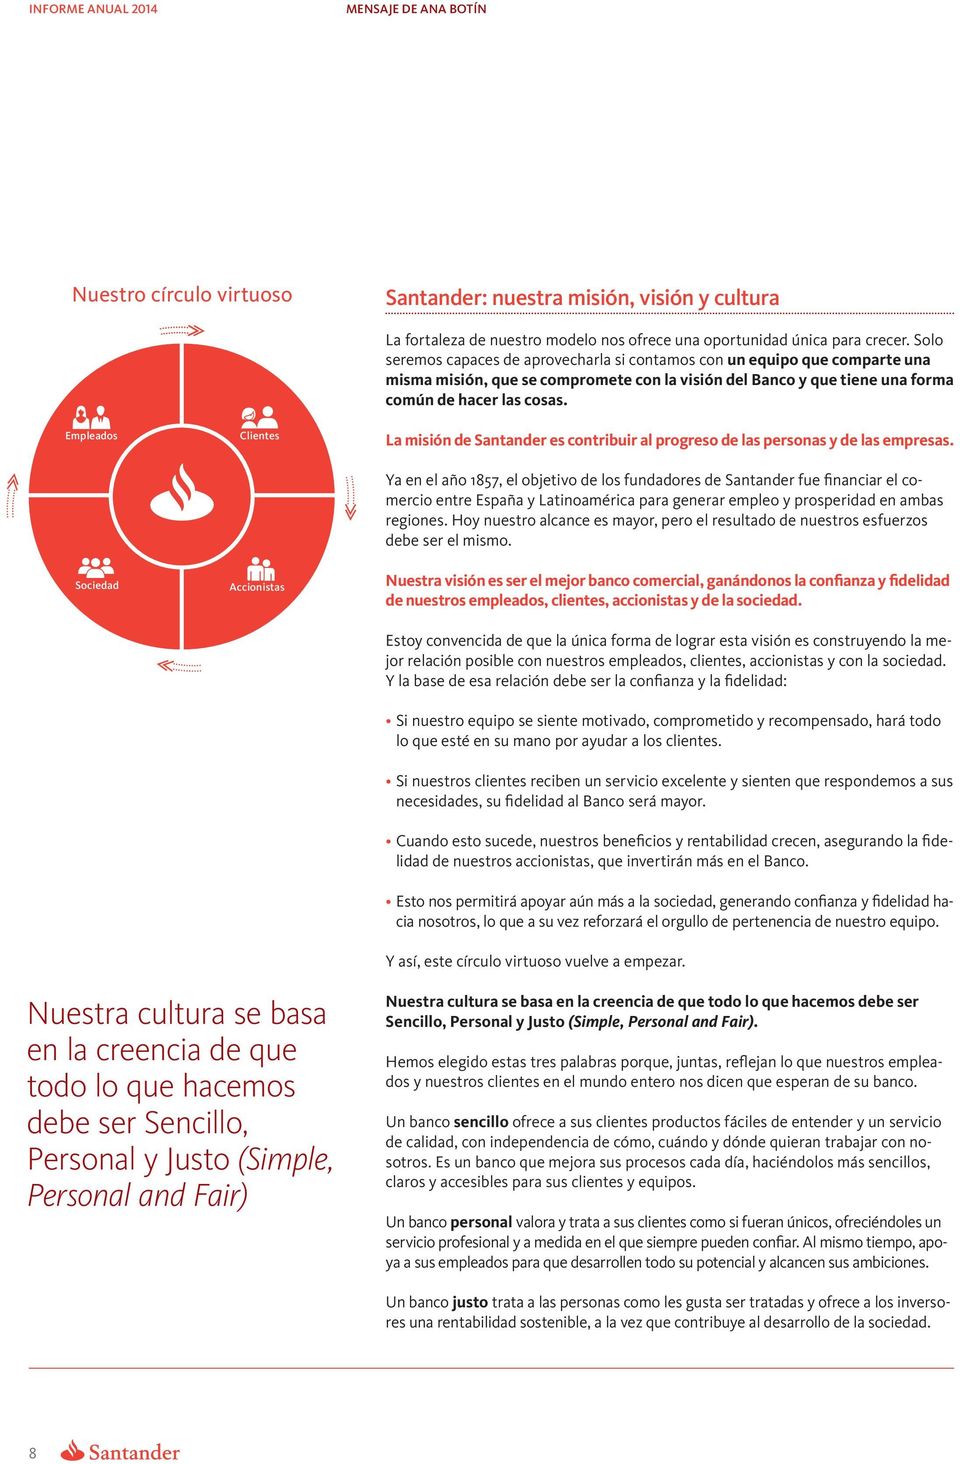 La misión de Santander es contribuir al progreso de las personas y de las empresas.